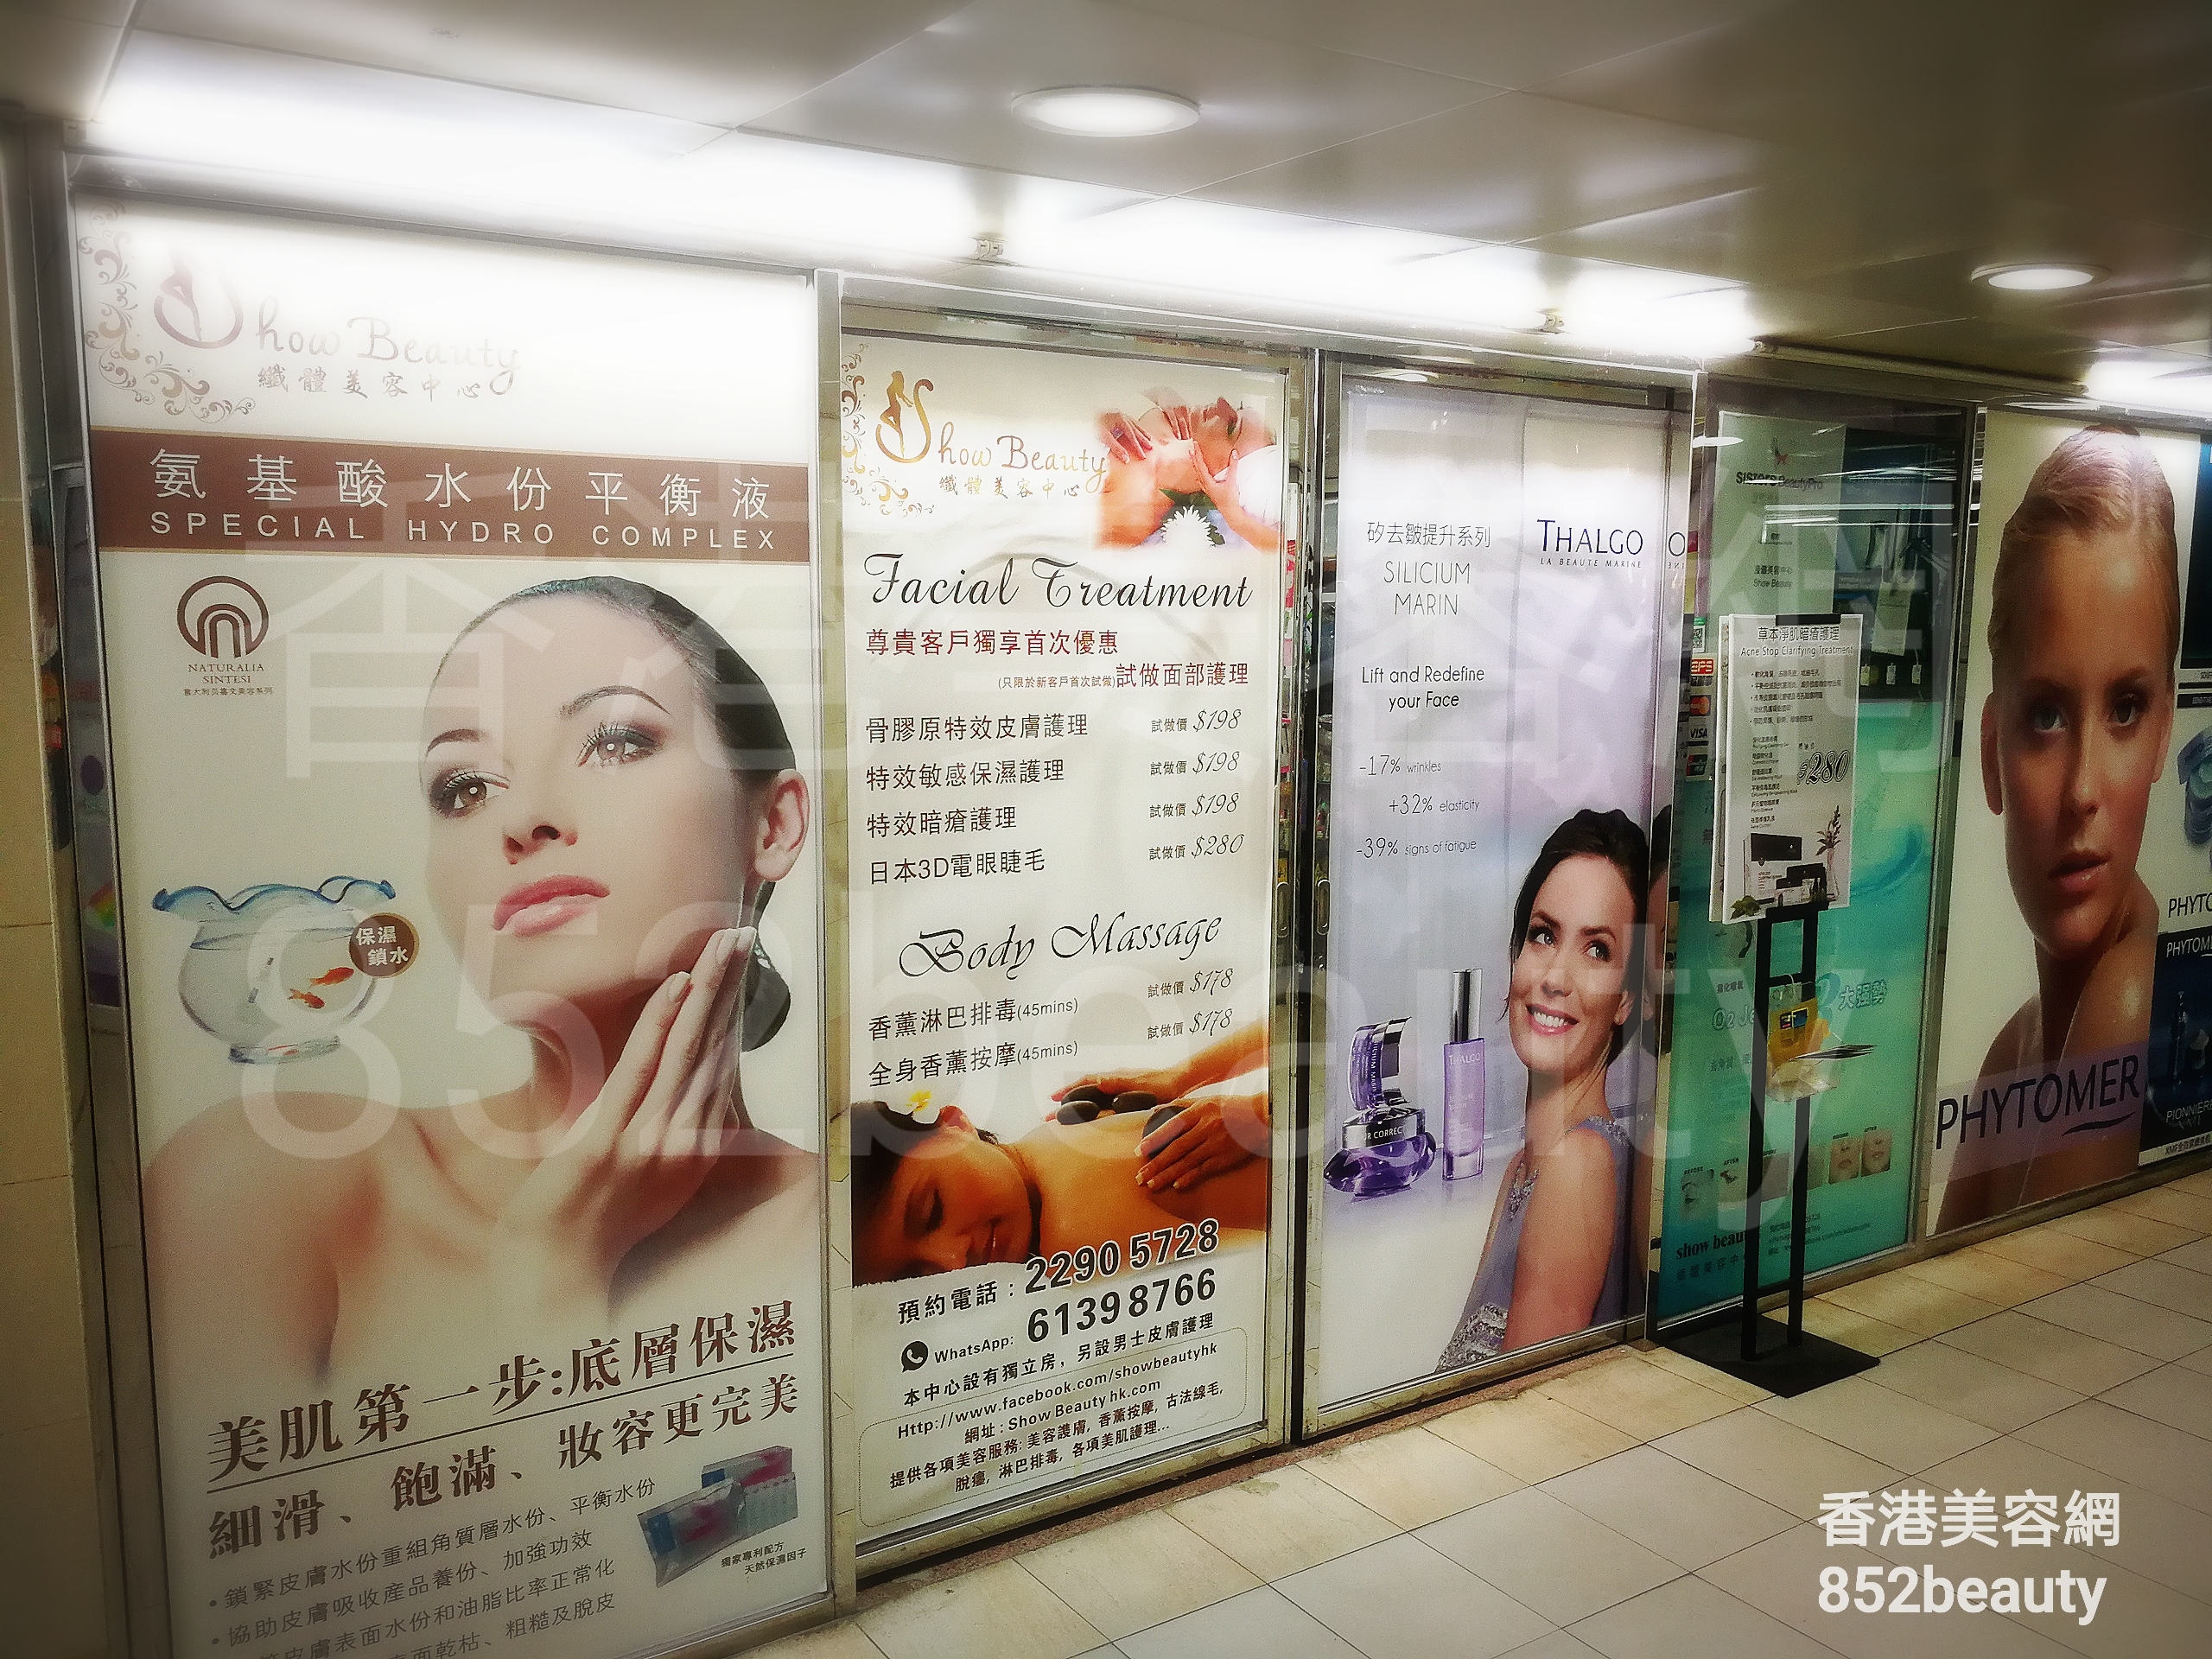 香港美容網 Hong Kong Beauty Salon 美容院 / 美容師: Show Beauty 纖體美容中心